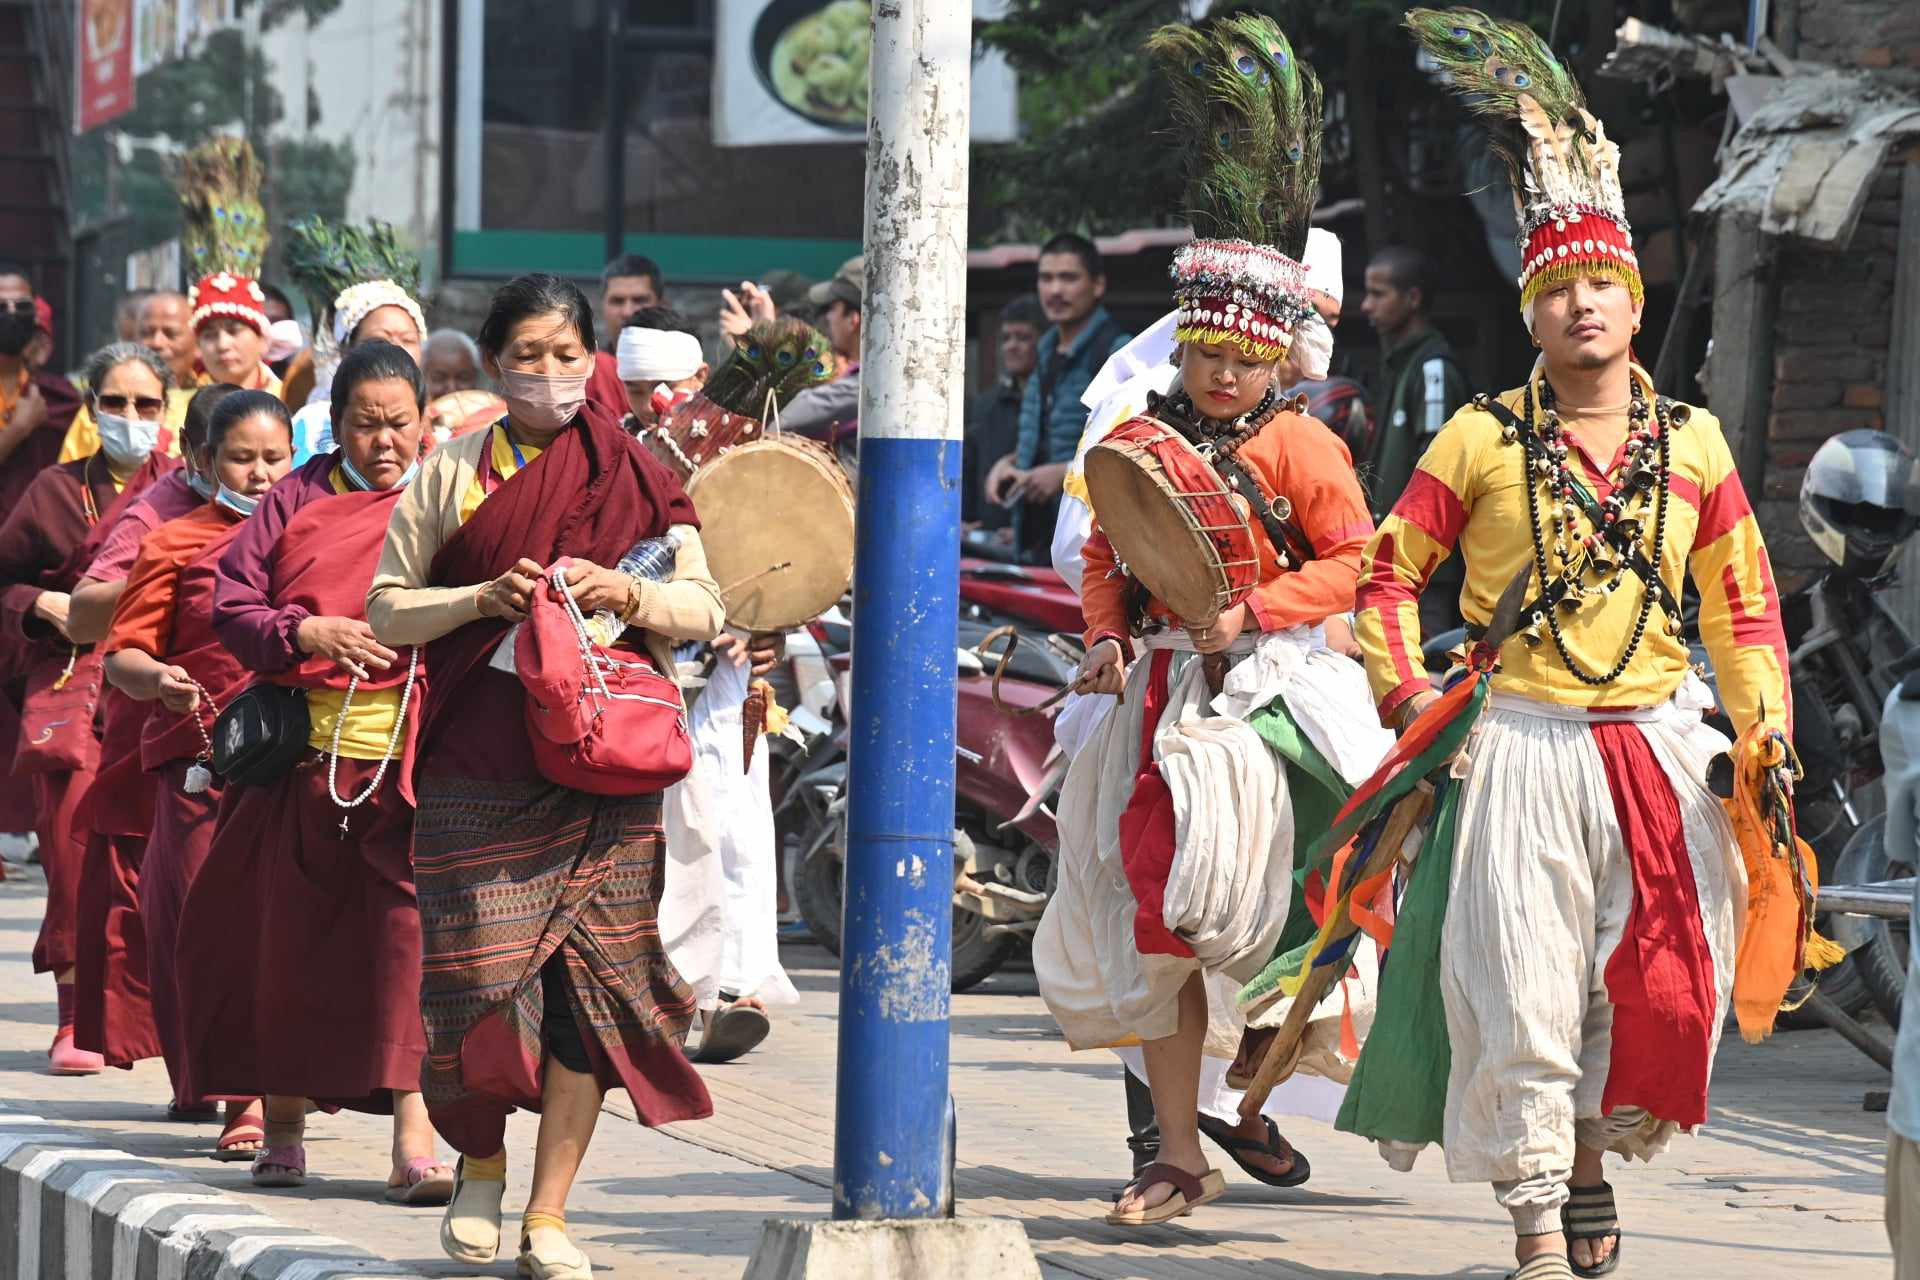 भिक्षुमाथि सुरक्षाकर्मीले गरेकाे दुर्व्यवहारविरुद्ध काठमाडाैंमा सांस्कृतिक प्रदर्शन (तस्वीरहरू)